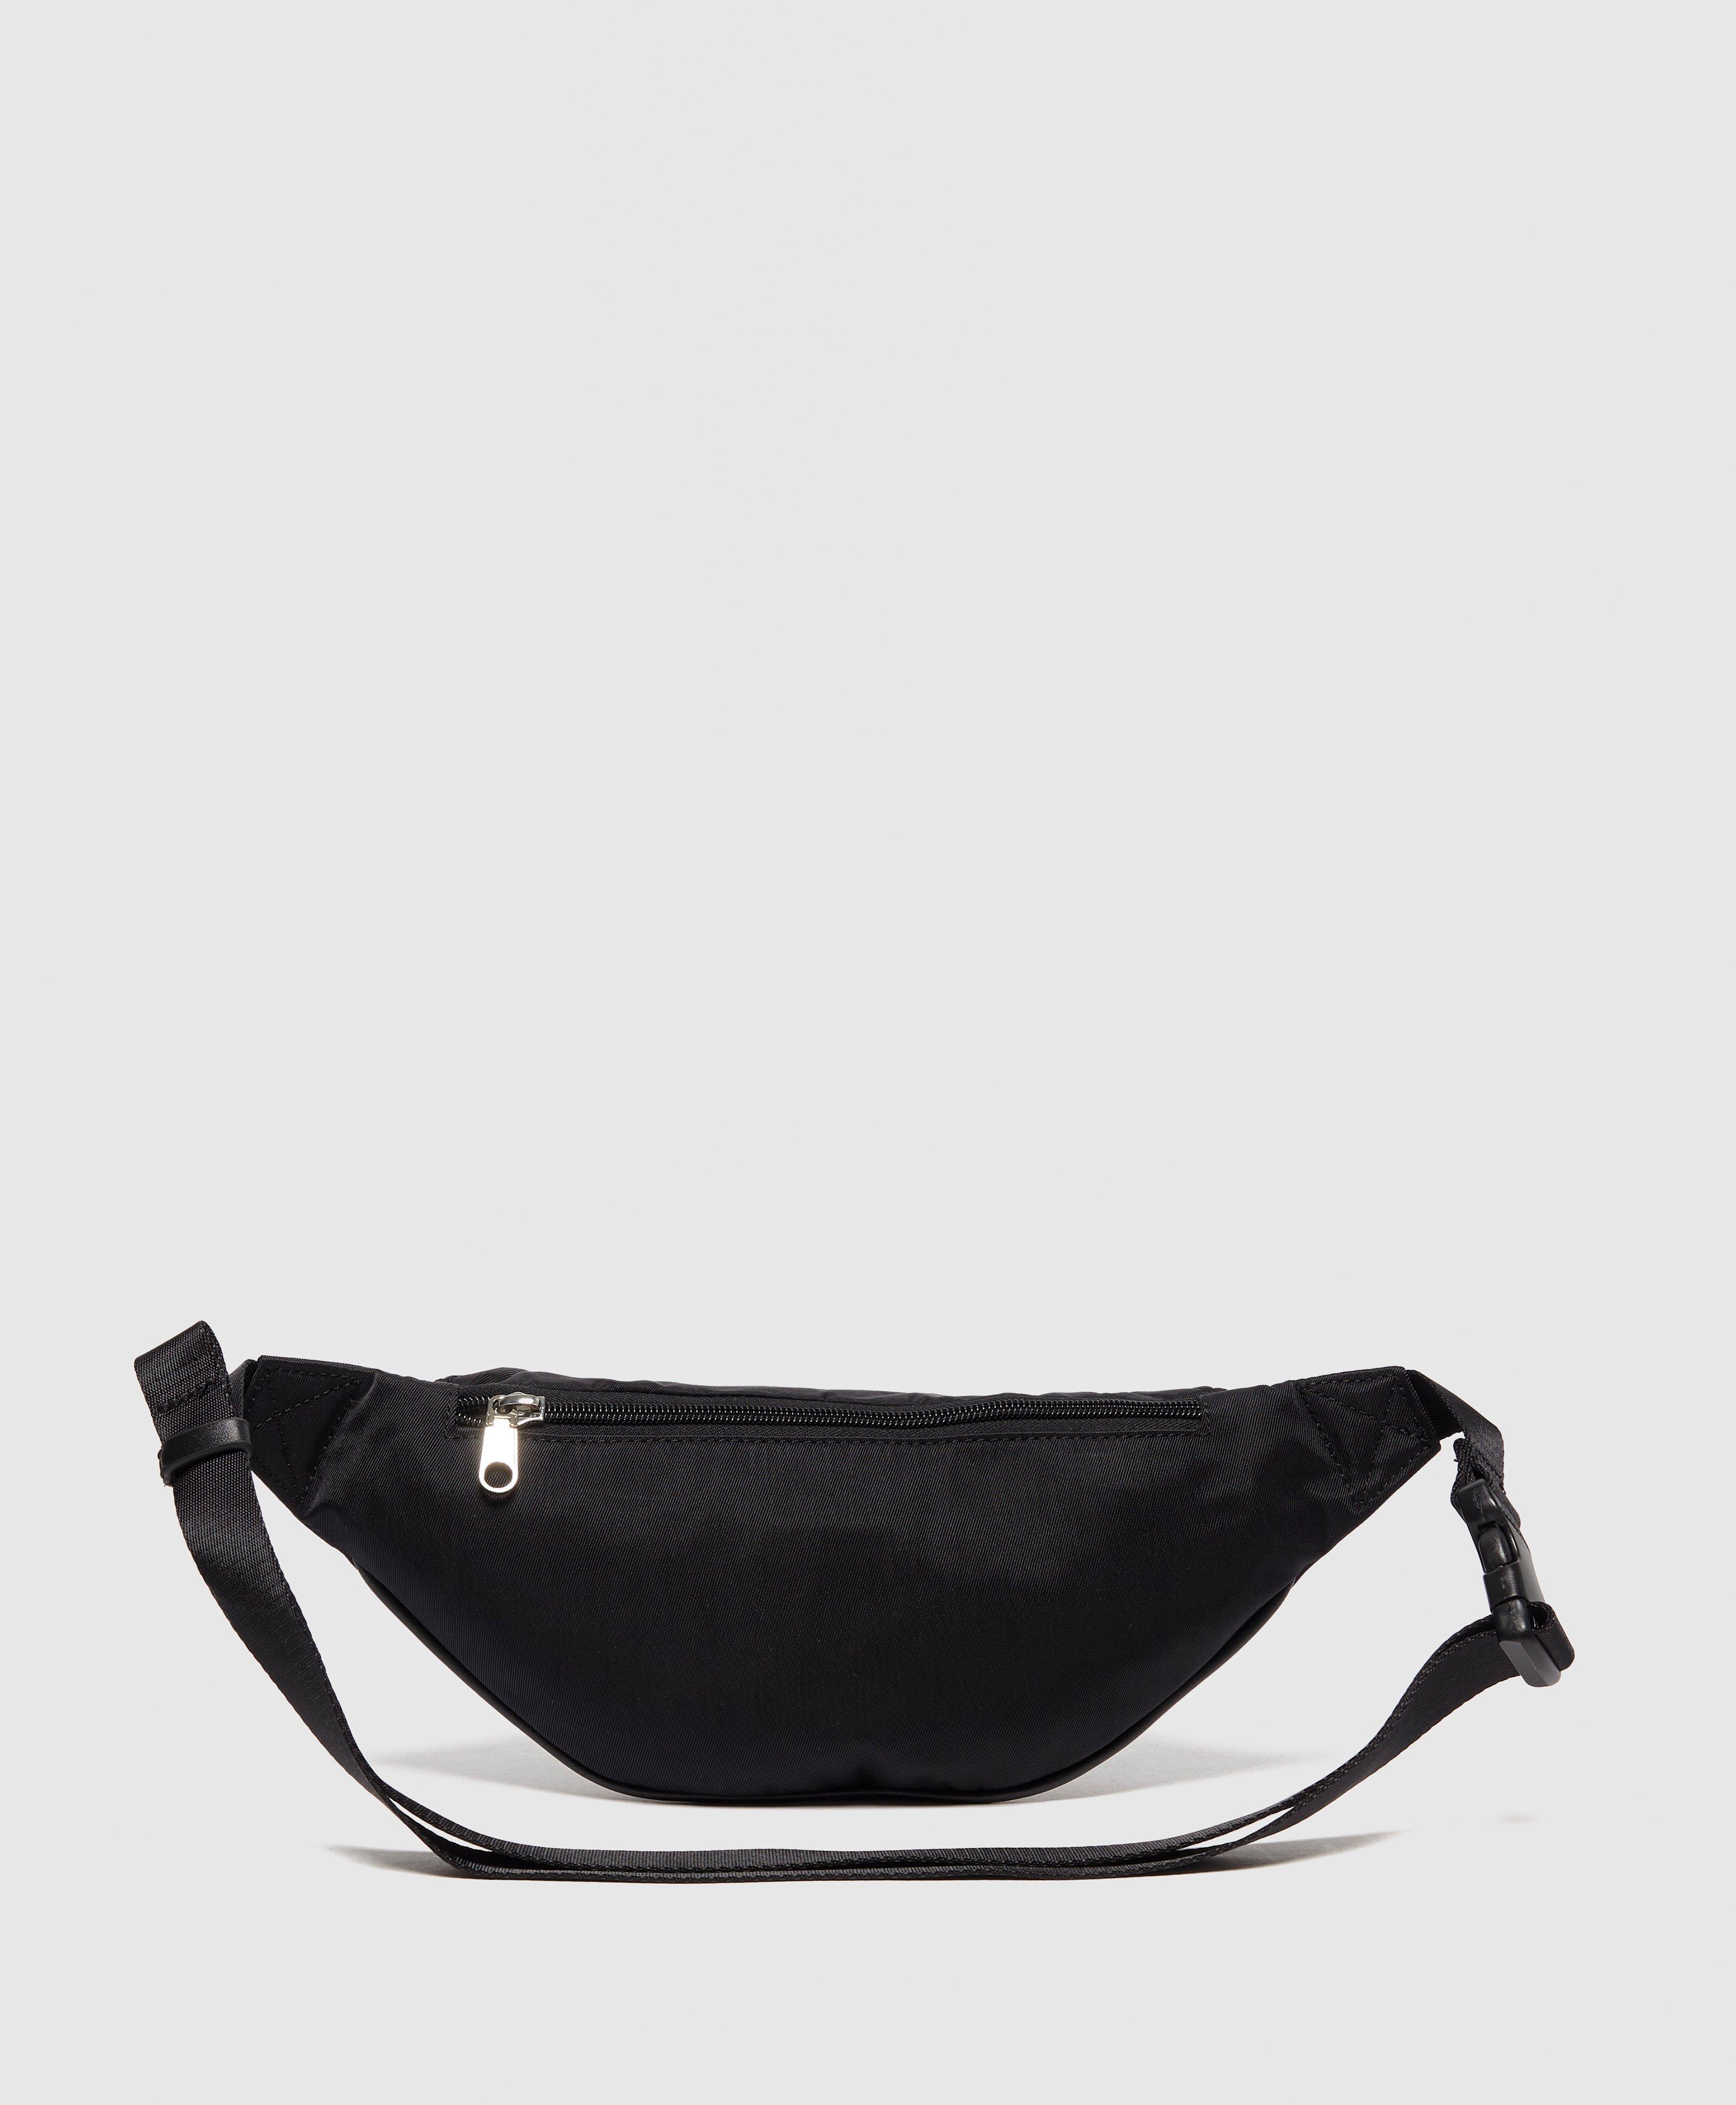 Calvin Klein Jeans Monogram Nylon Bum Bag in Black for Men - Lyst